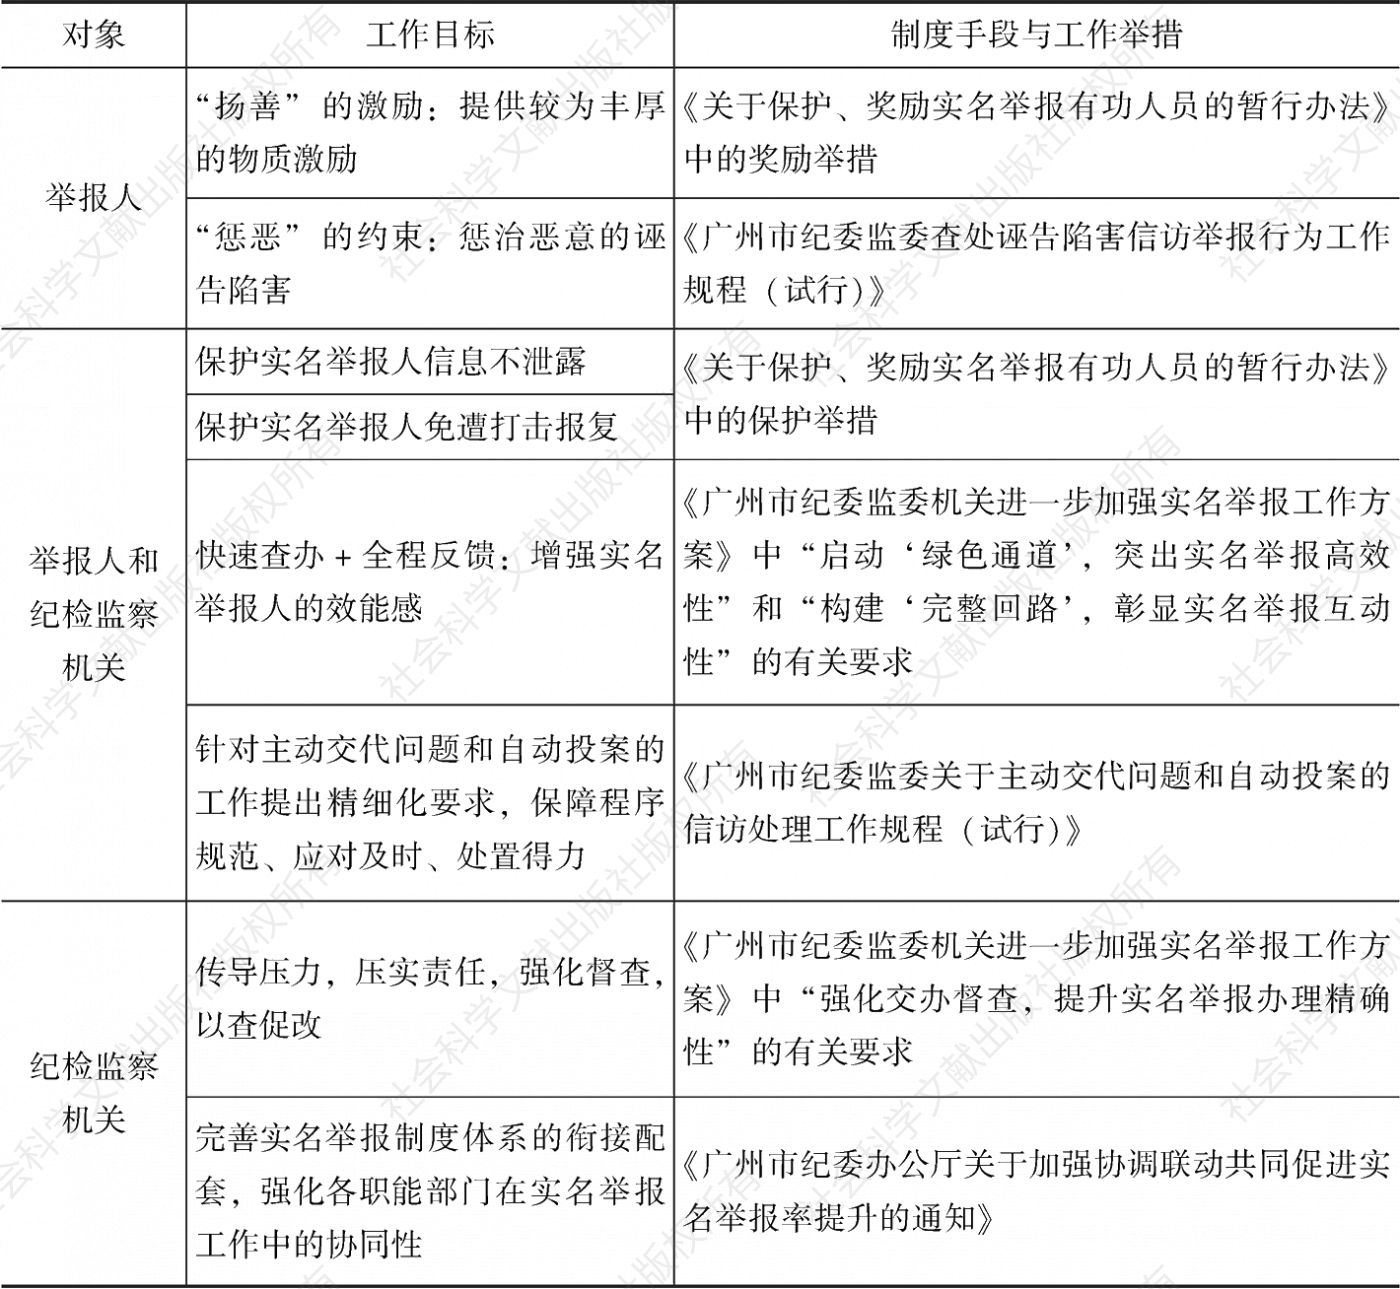 广州市纪委监委提升实名举报率的制度集成创新